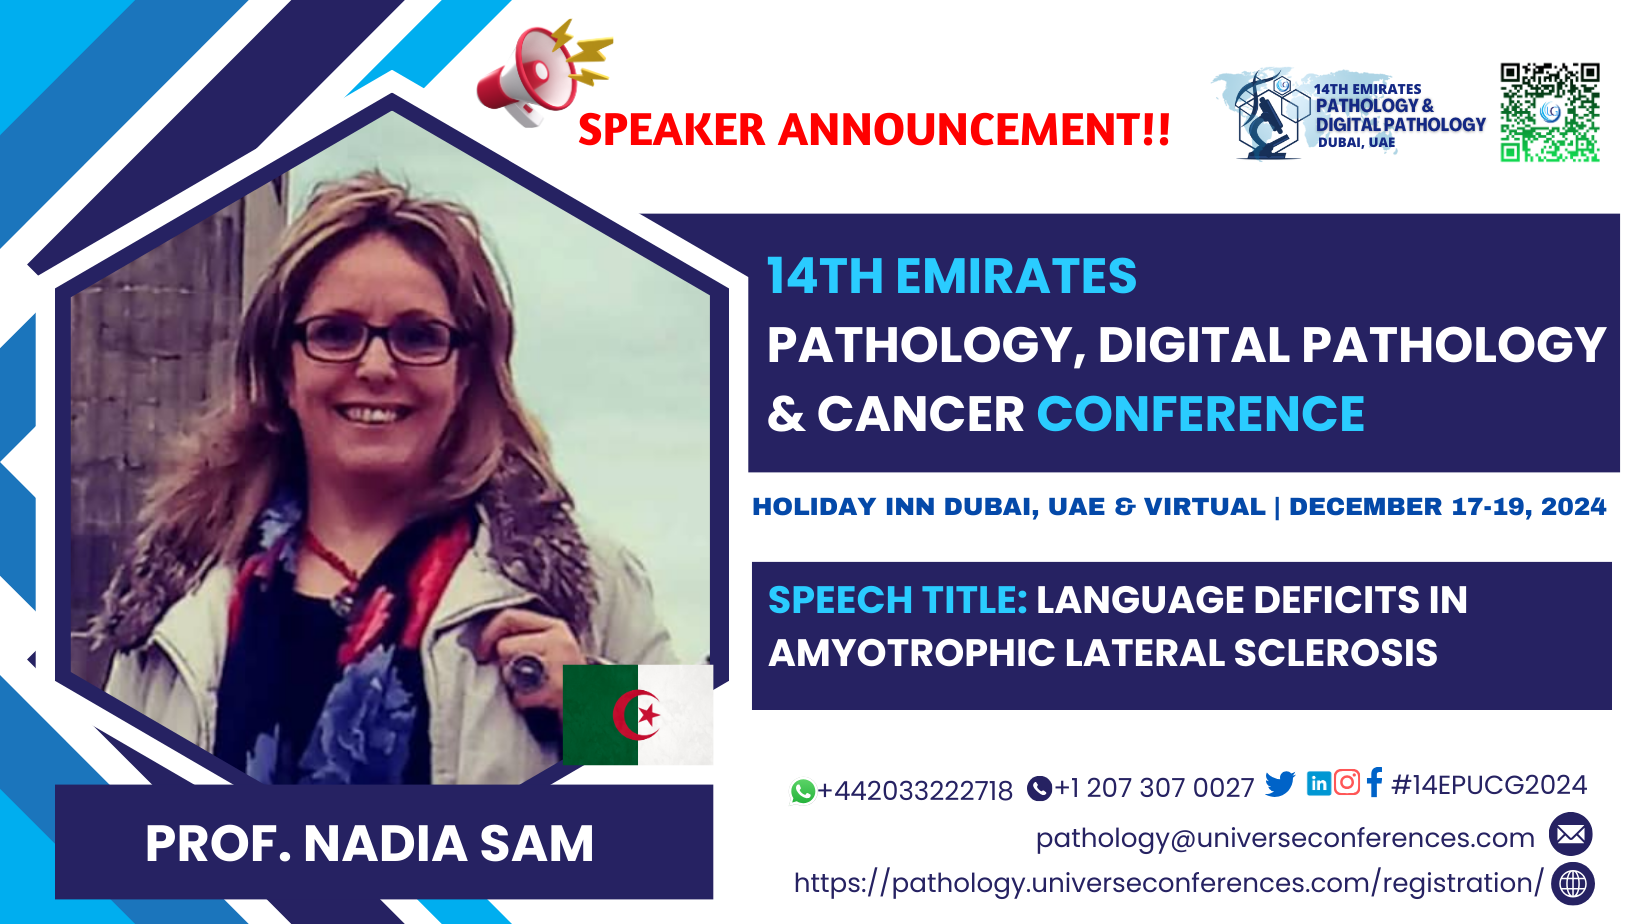 14th Emirates Pathology, Digital Pathology & Cancer Conference (Prof. Nadia Sam)